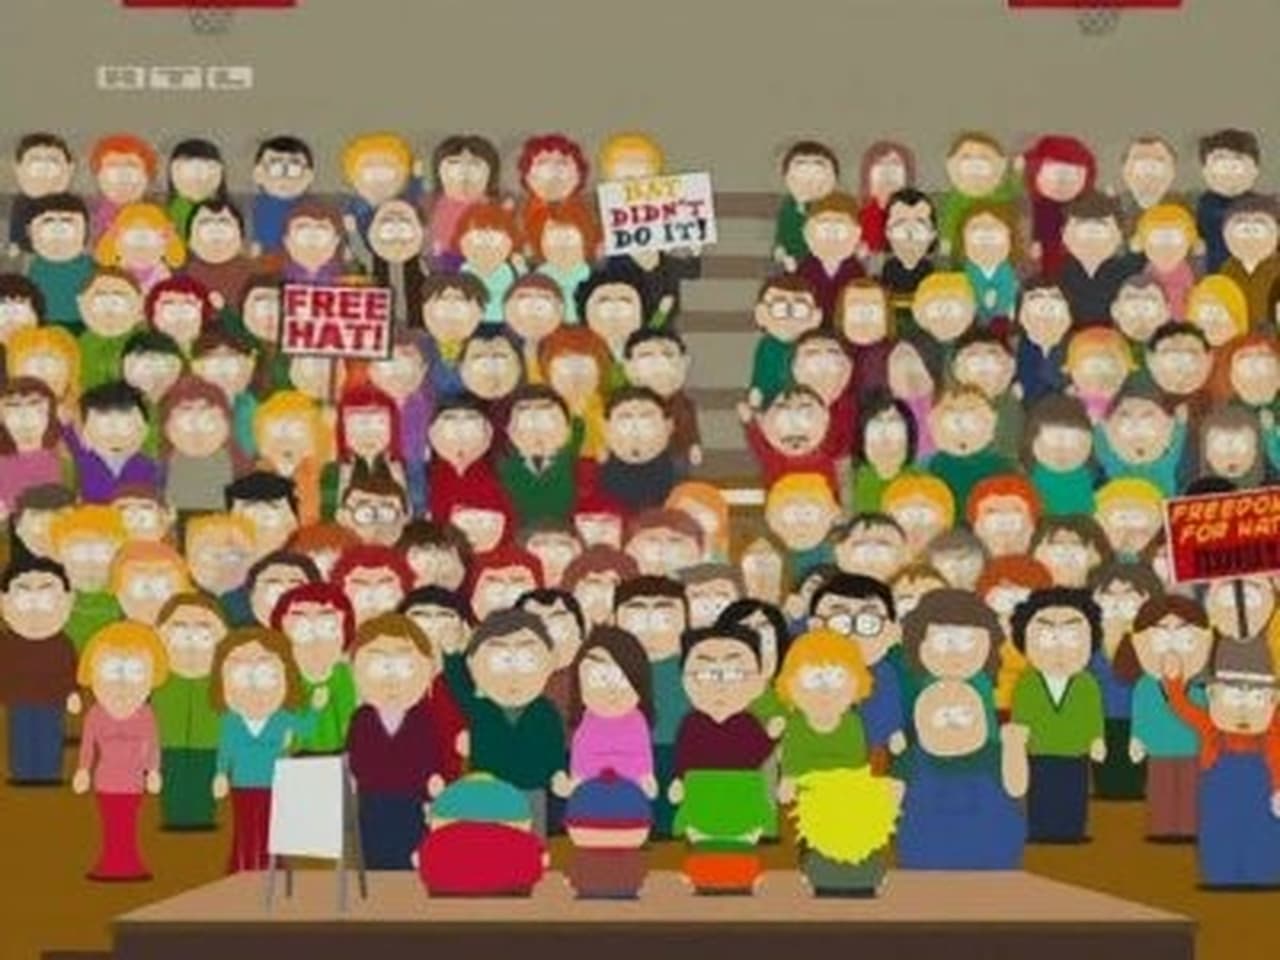 South Park - Season 6 Episode 9 : Free Hat